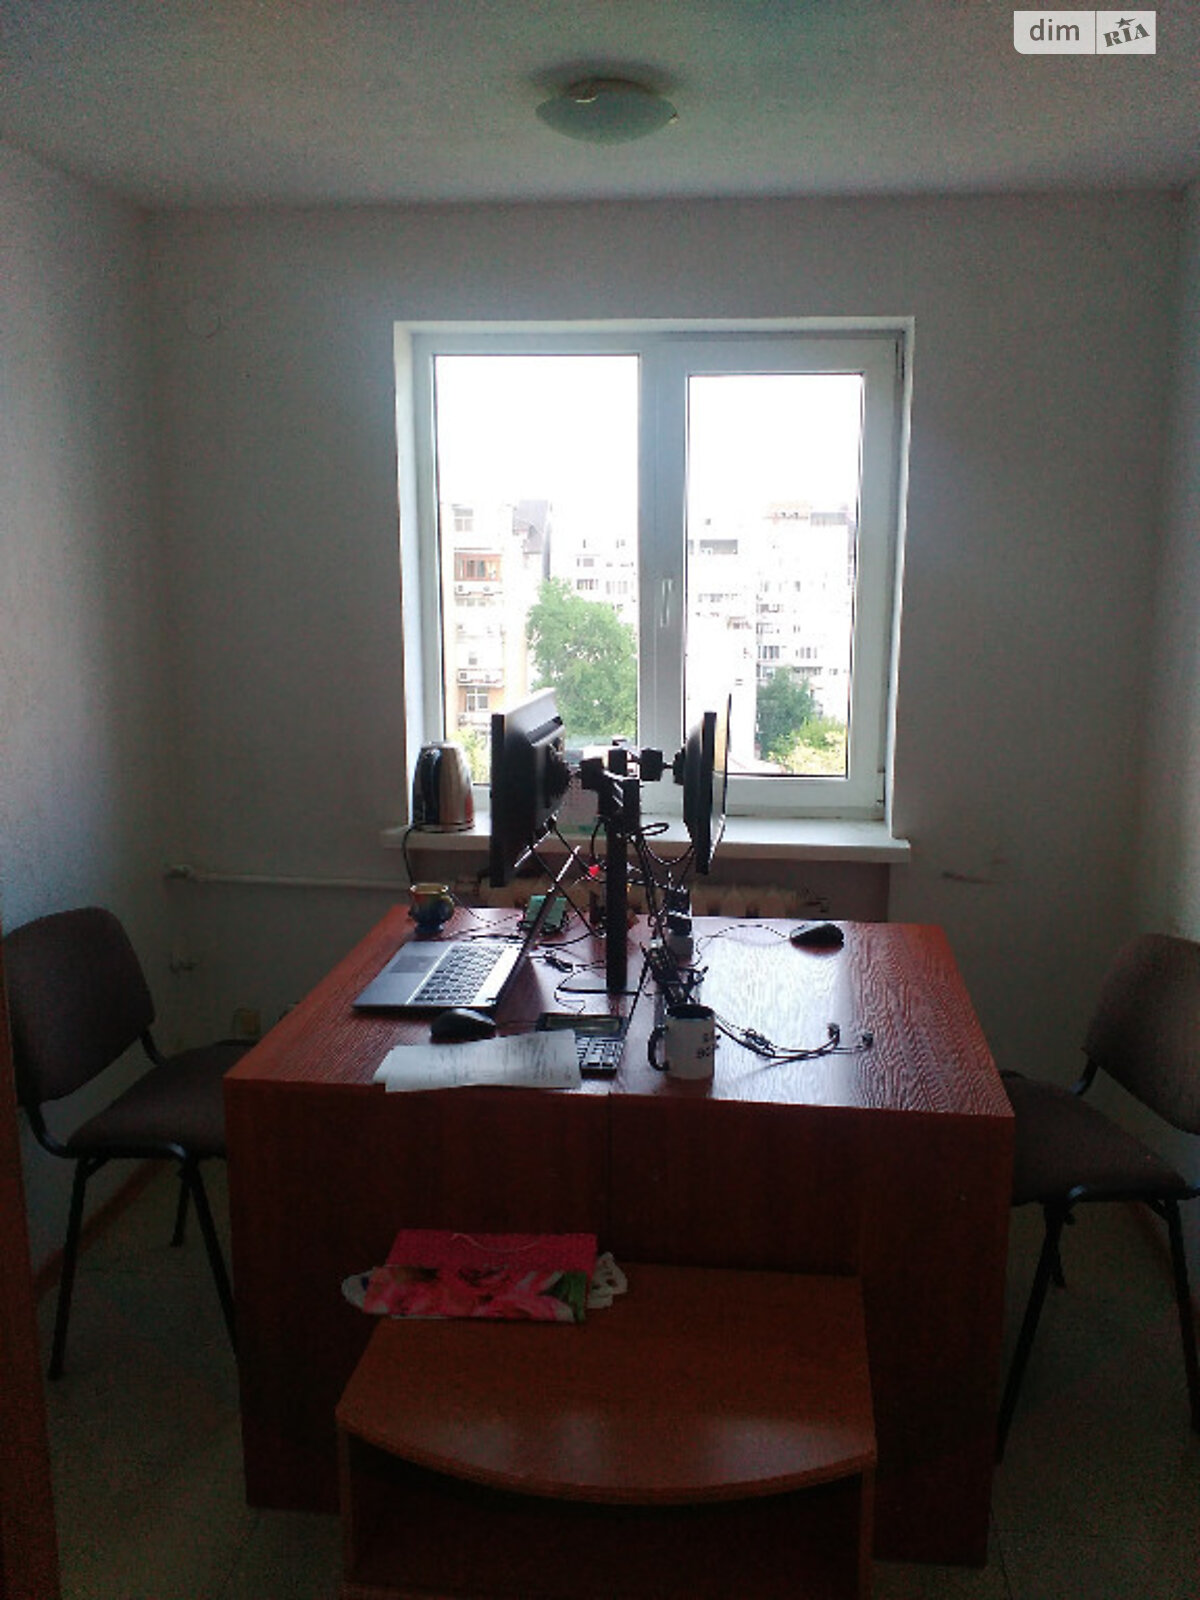 Аренда офисного помещения в Днепре, Святослава Храброго улица 44, помещений - 1, этаж - 8 фото 1